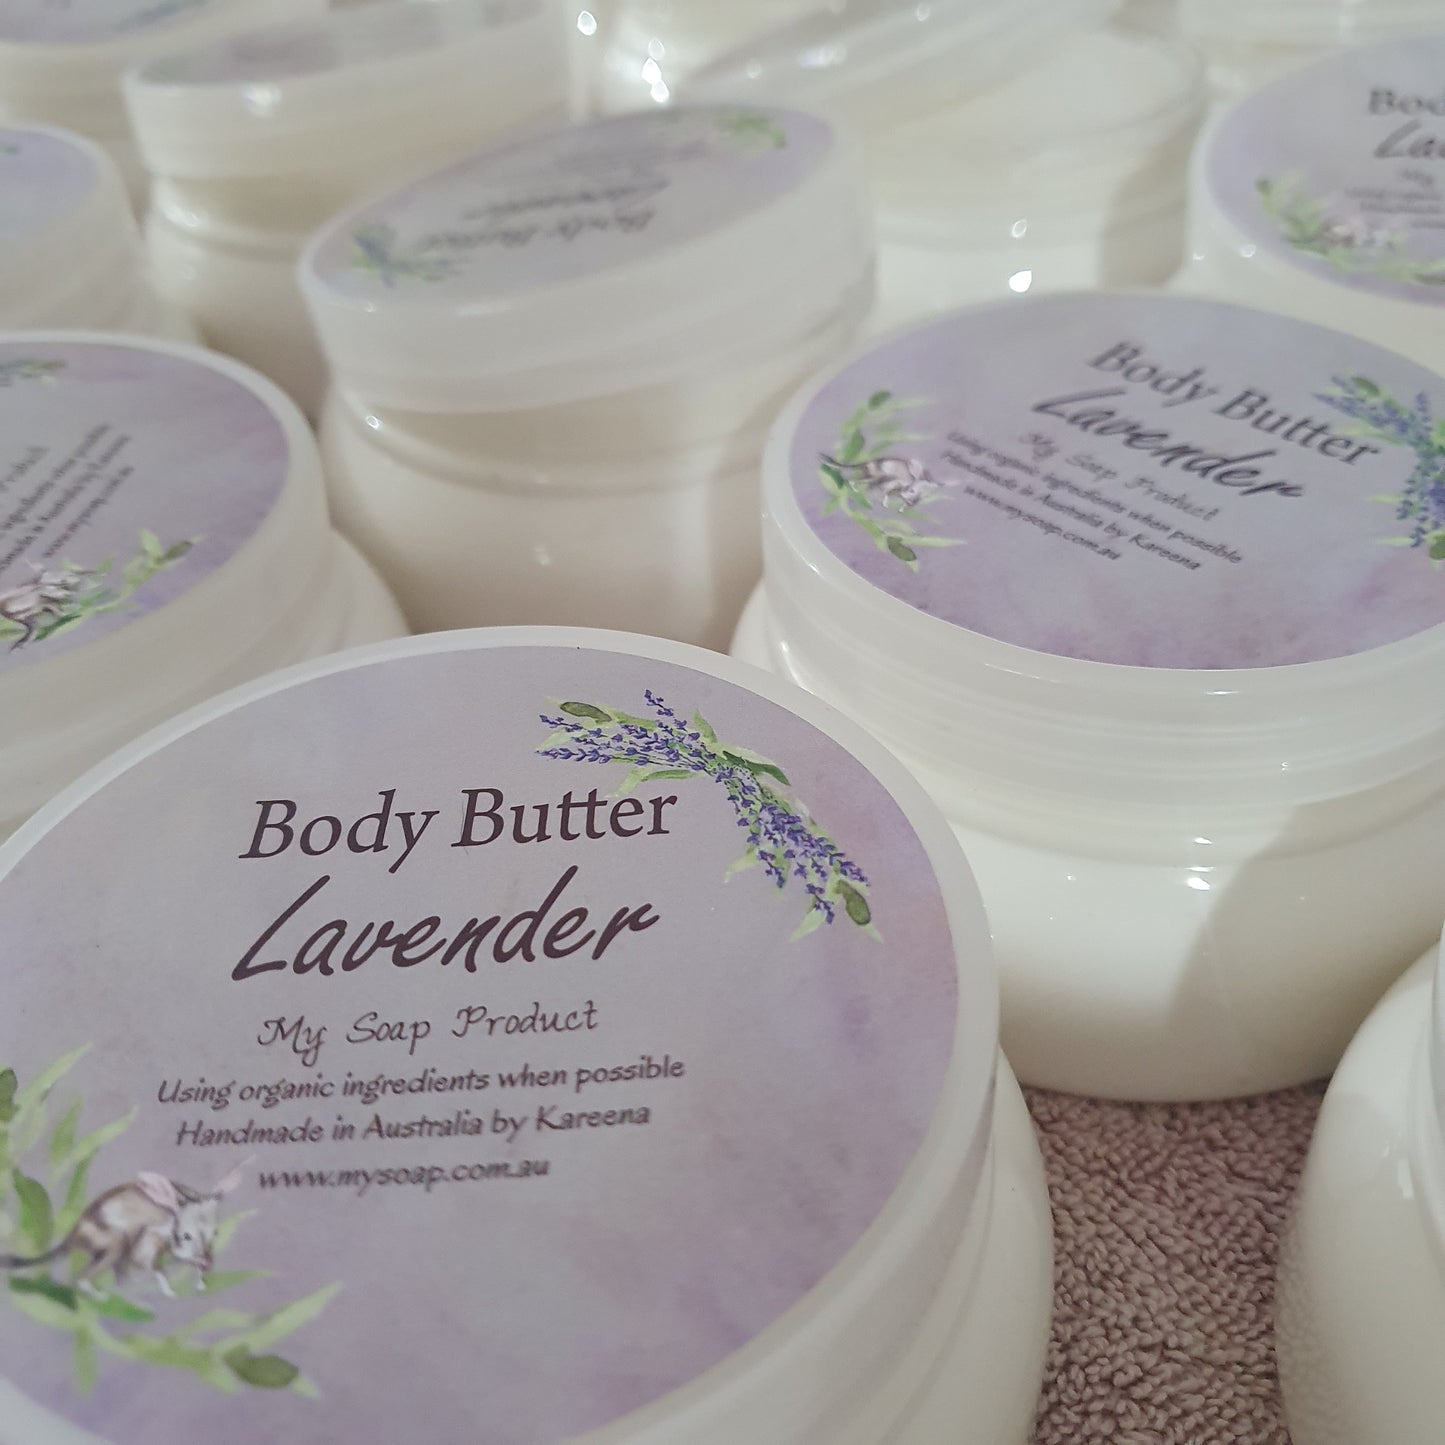 Australian Lavender Body Butter